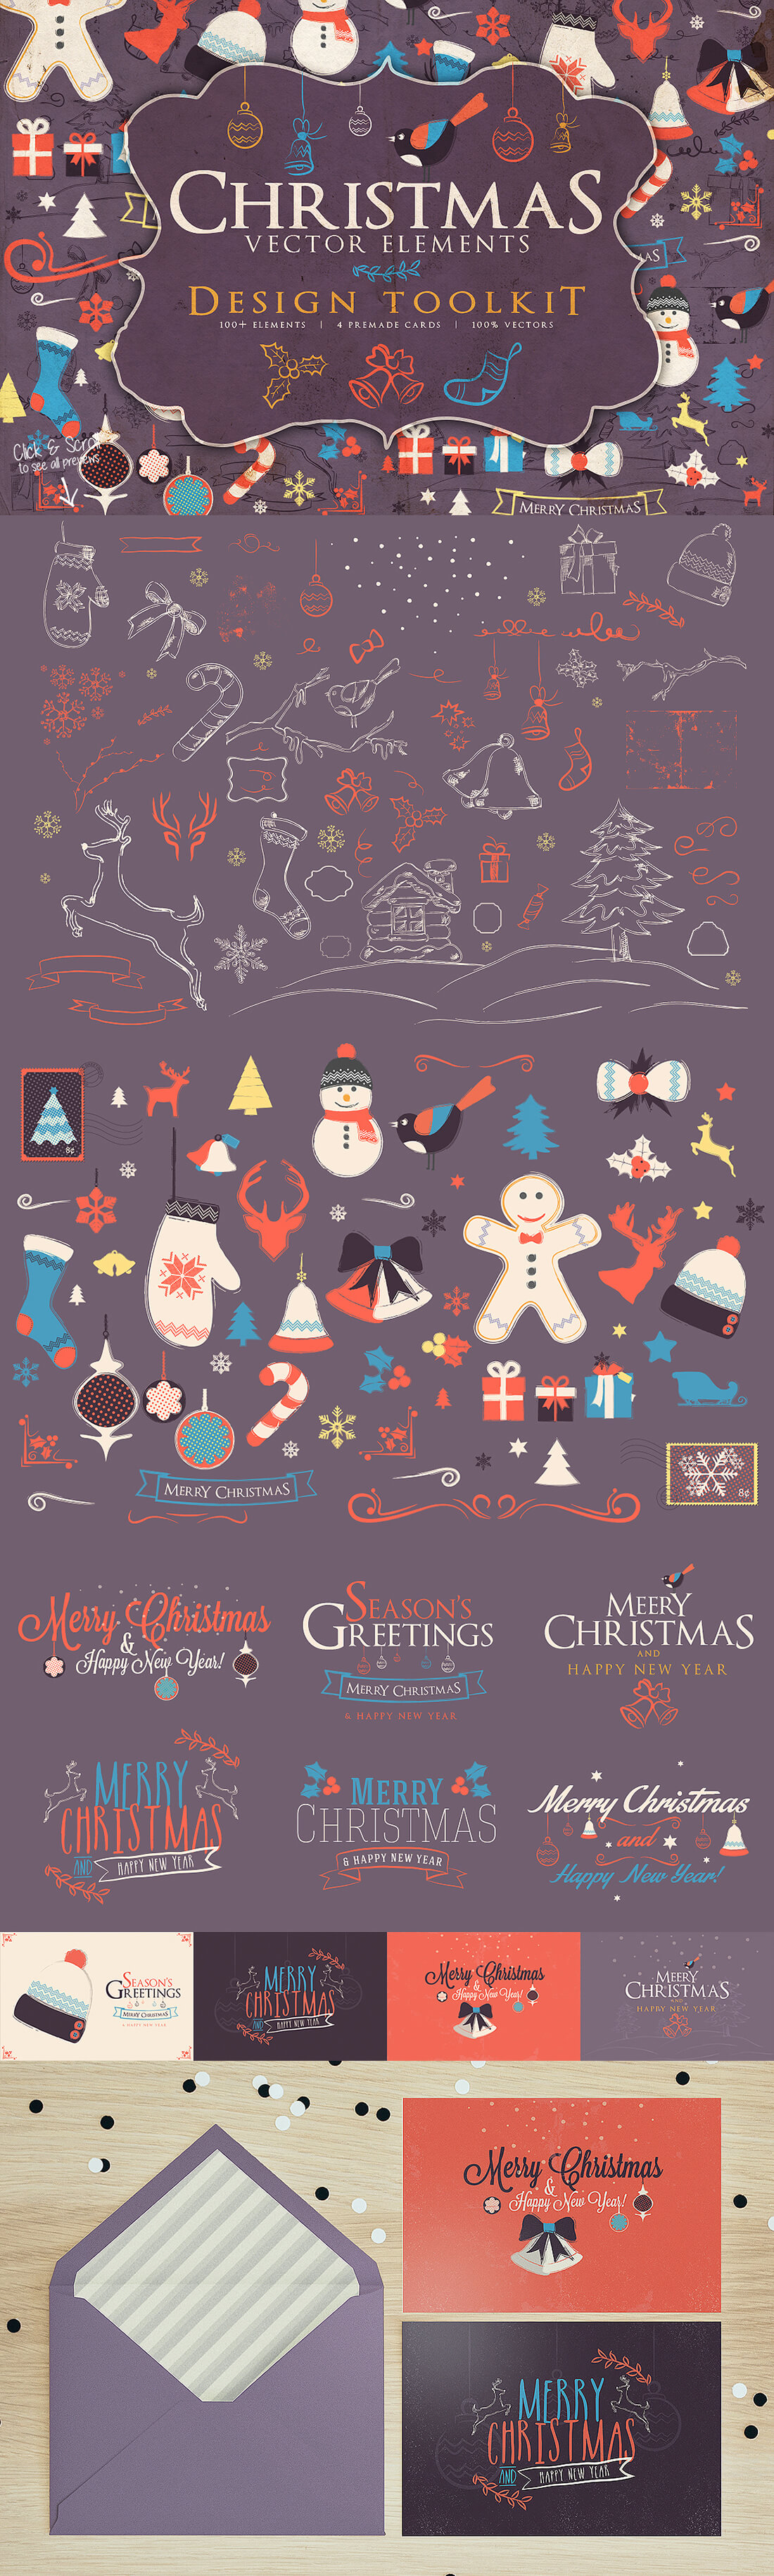 圣诞特典：400+圣诞主题设计素材包 Christmas Bundle 2016（2.35GB, AI, EPS, PSD 格式）插图(1)